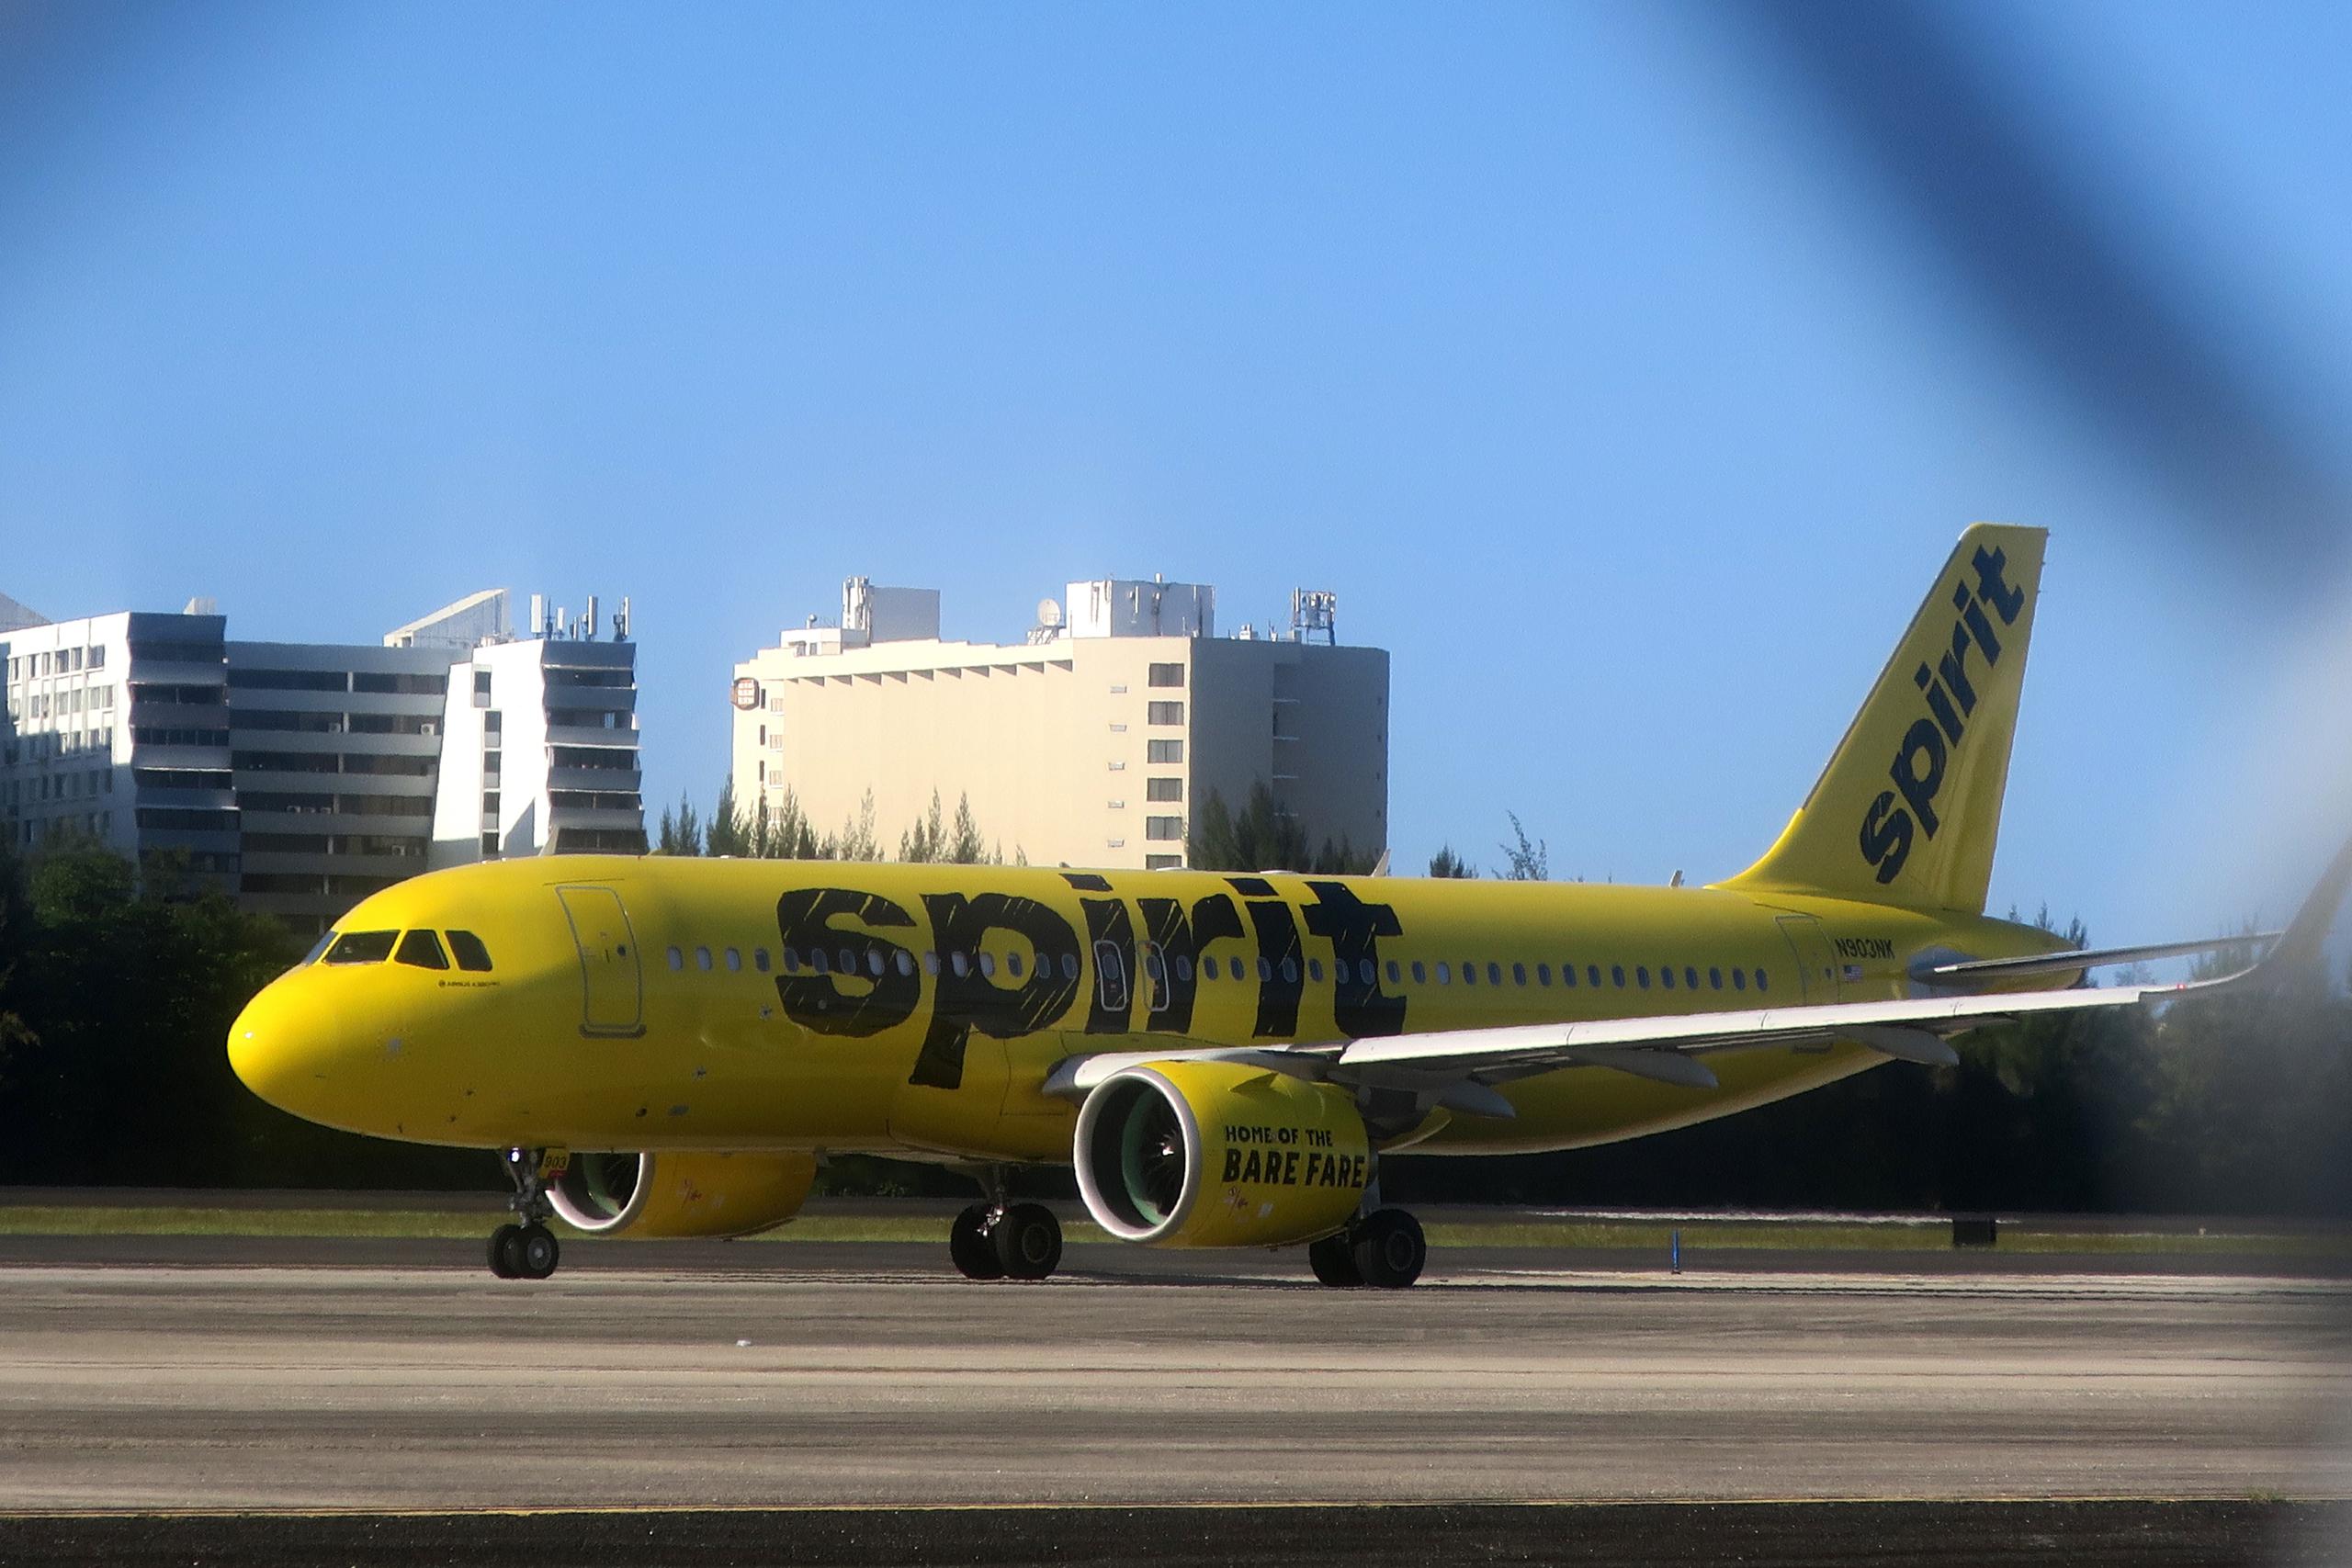 Para la tarde del lunes, la aerolínea de bajo costo Spirit Airlines había cancelado unos 270 vuelos alegando problemas meteorológicos y operativos.